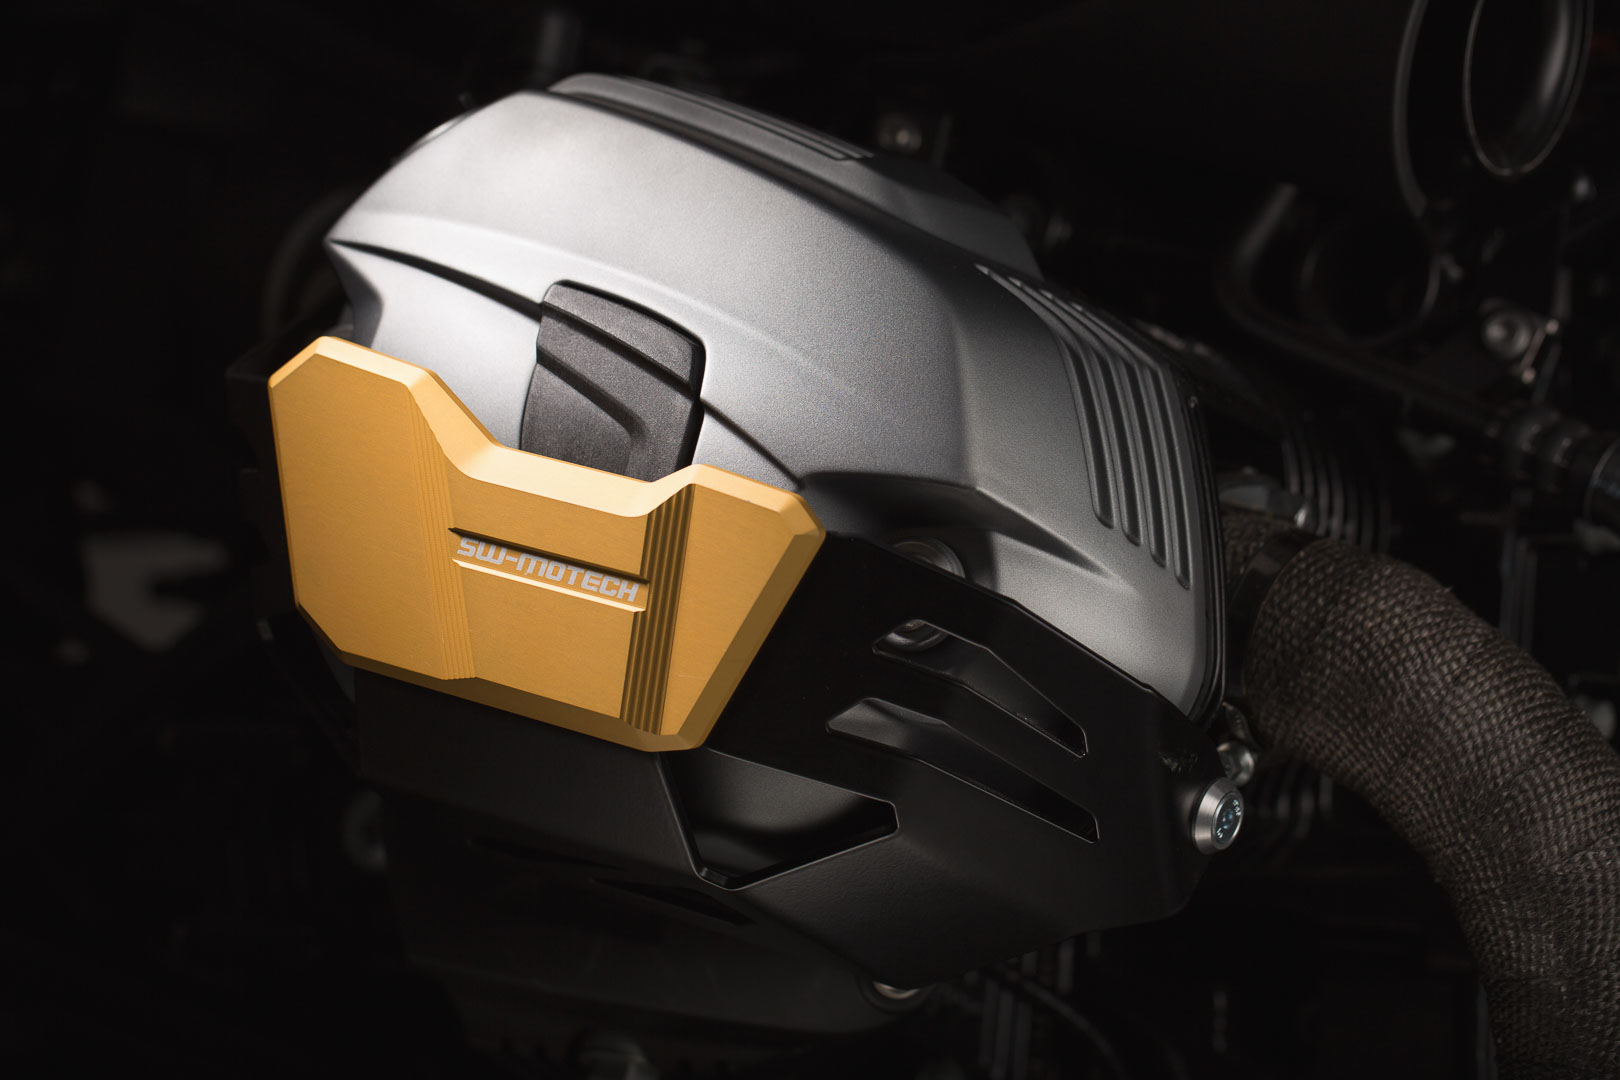 Image of SW-Motech Protezione cilindro - Dorato. BMW R1200 R / GS / Adv, R nineT., oro